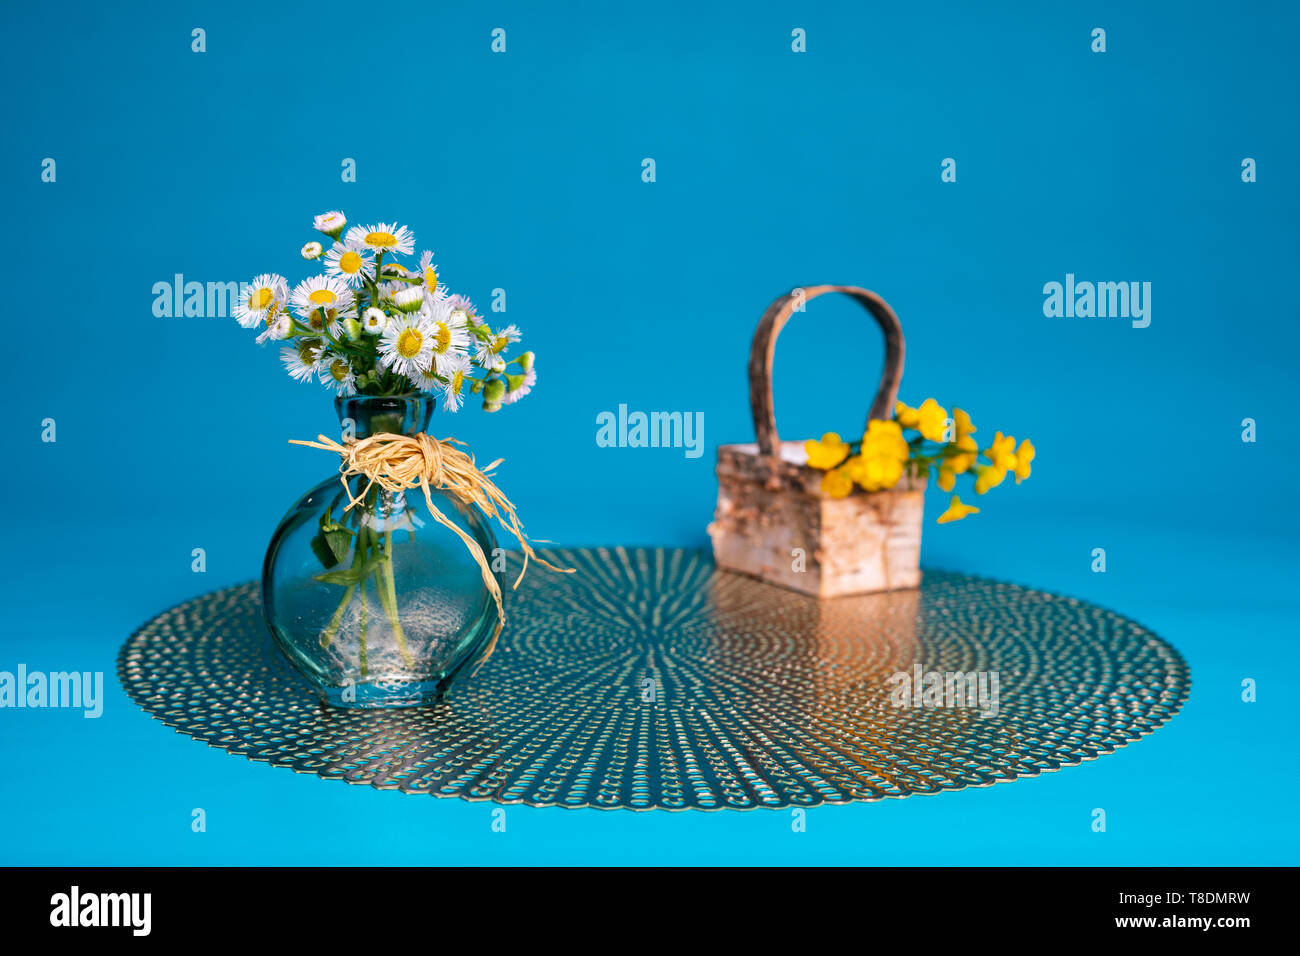 Prairie fleabane Wildblumen in ein kleines Glas Vase gegen eine hellblaue Hintergrund angeordnet. Ein paar haarige buttercup Blumen liegen in einem kleinen Korb. Stockfoto